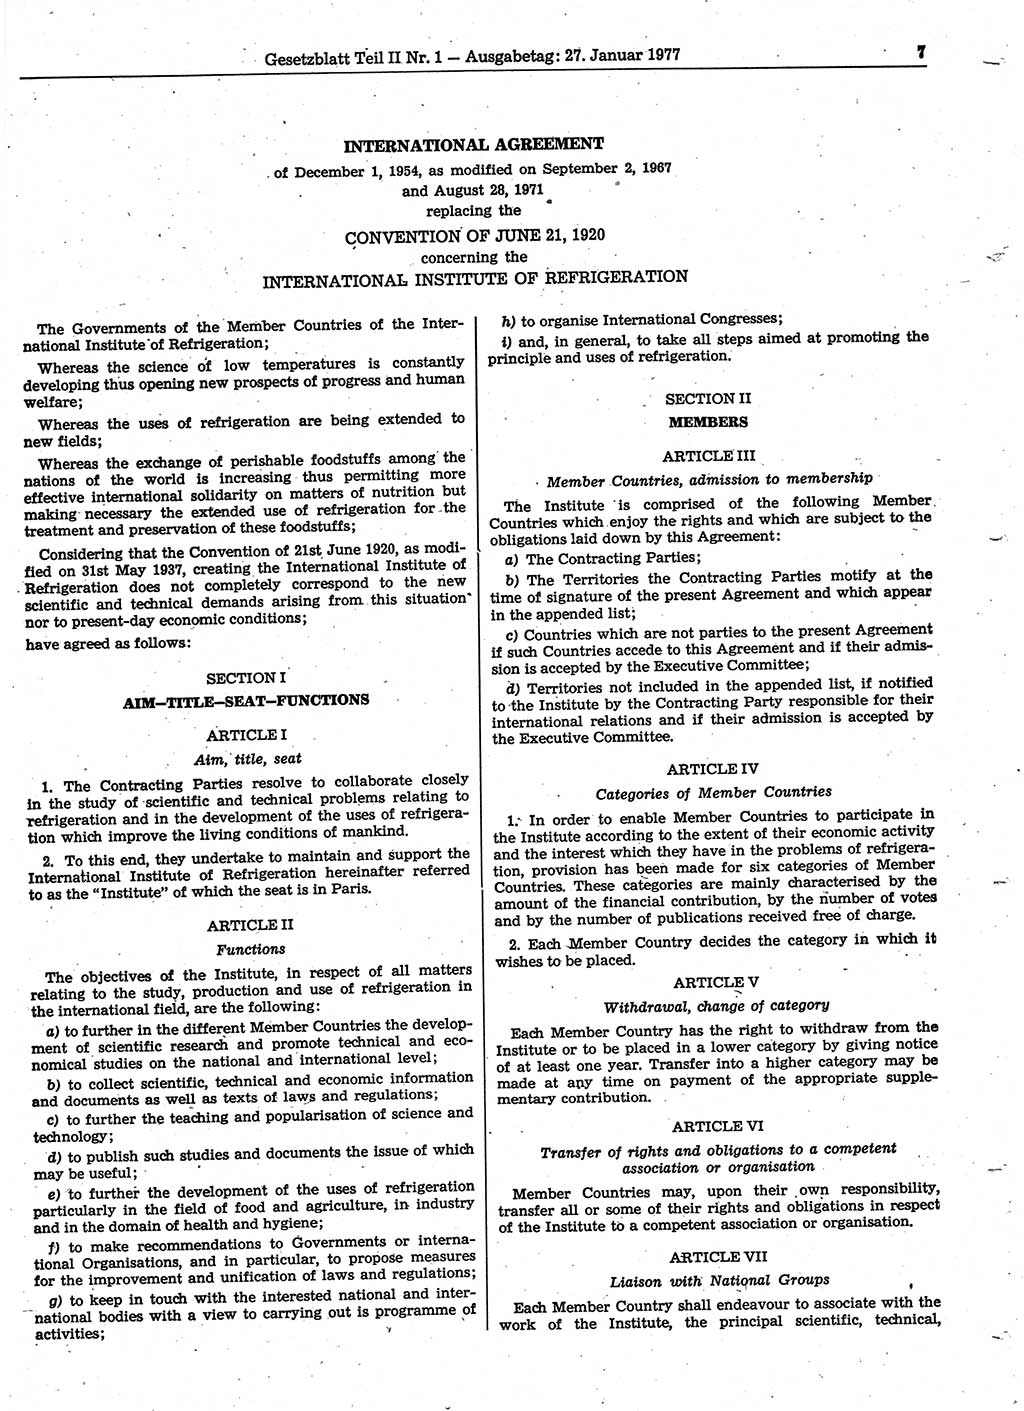 Gesetzblatt (GBl.) der Deutschen Demokratischen Republik (DDR) Teil ⅠⅠ 1977, Seite 7 (GBl. DDR ⅠⅠ 1977, S. 7)